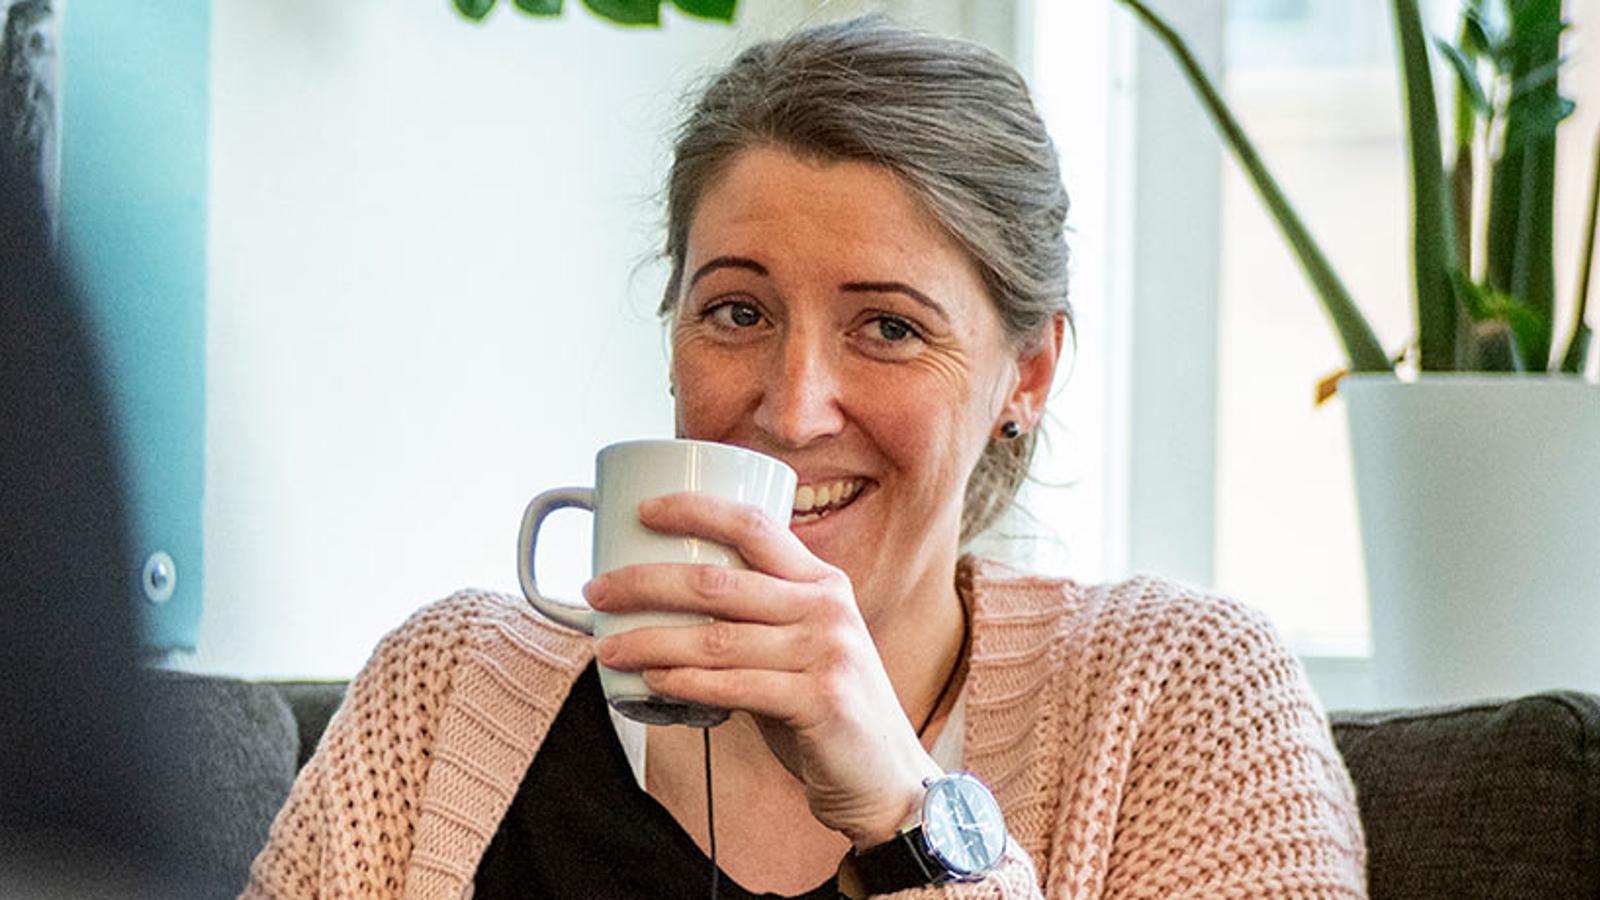 En glad kvinna som tittar förbi kameran och håller i en kaffemugg.